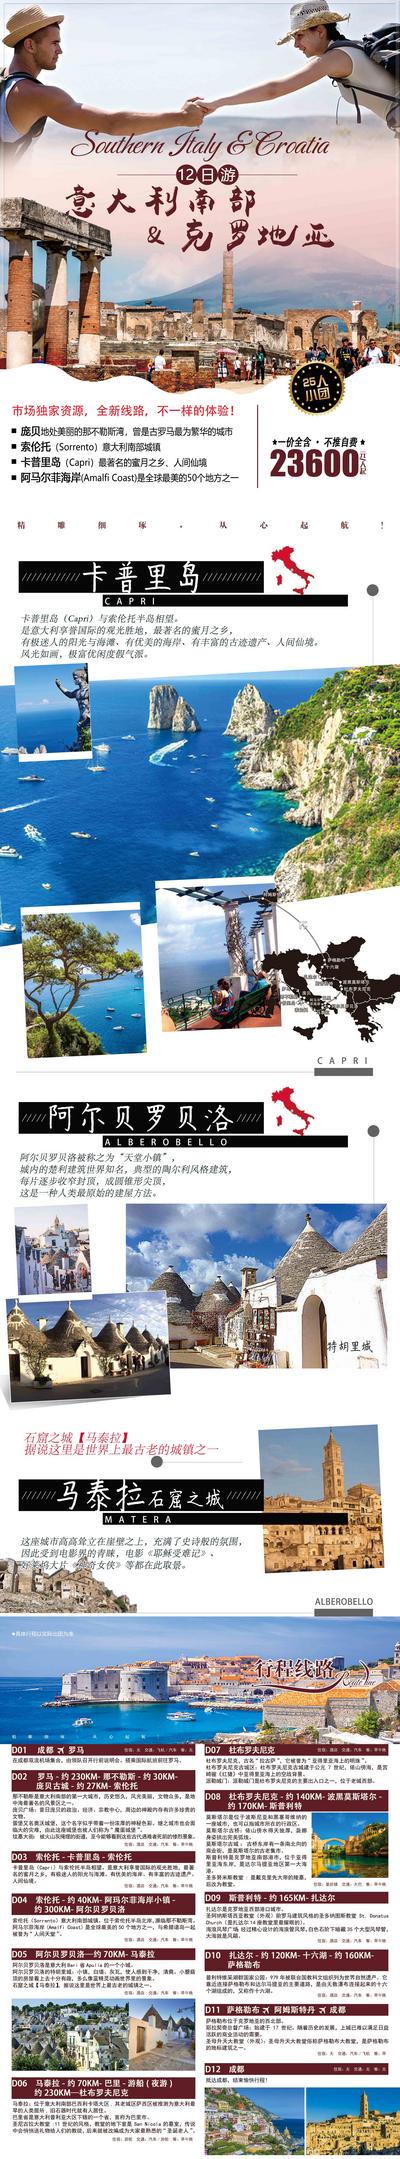 南门网 广告 海报 旅游 意大利 人物 建筑 线路 地图 风景 特色